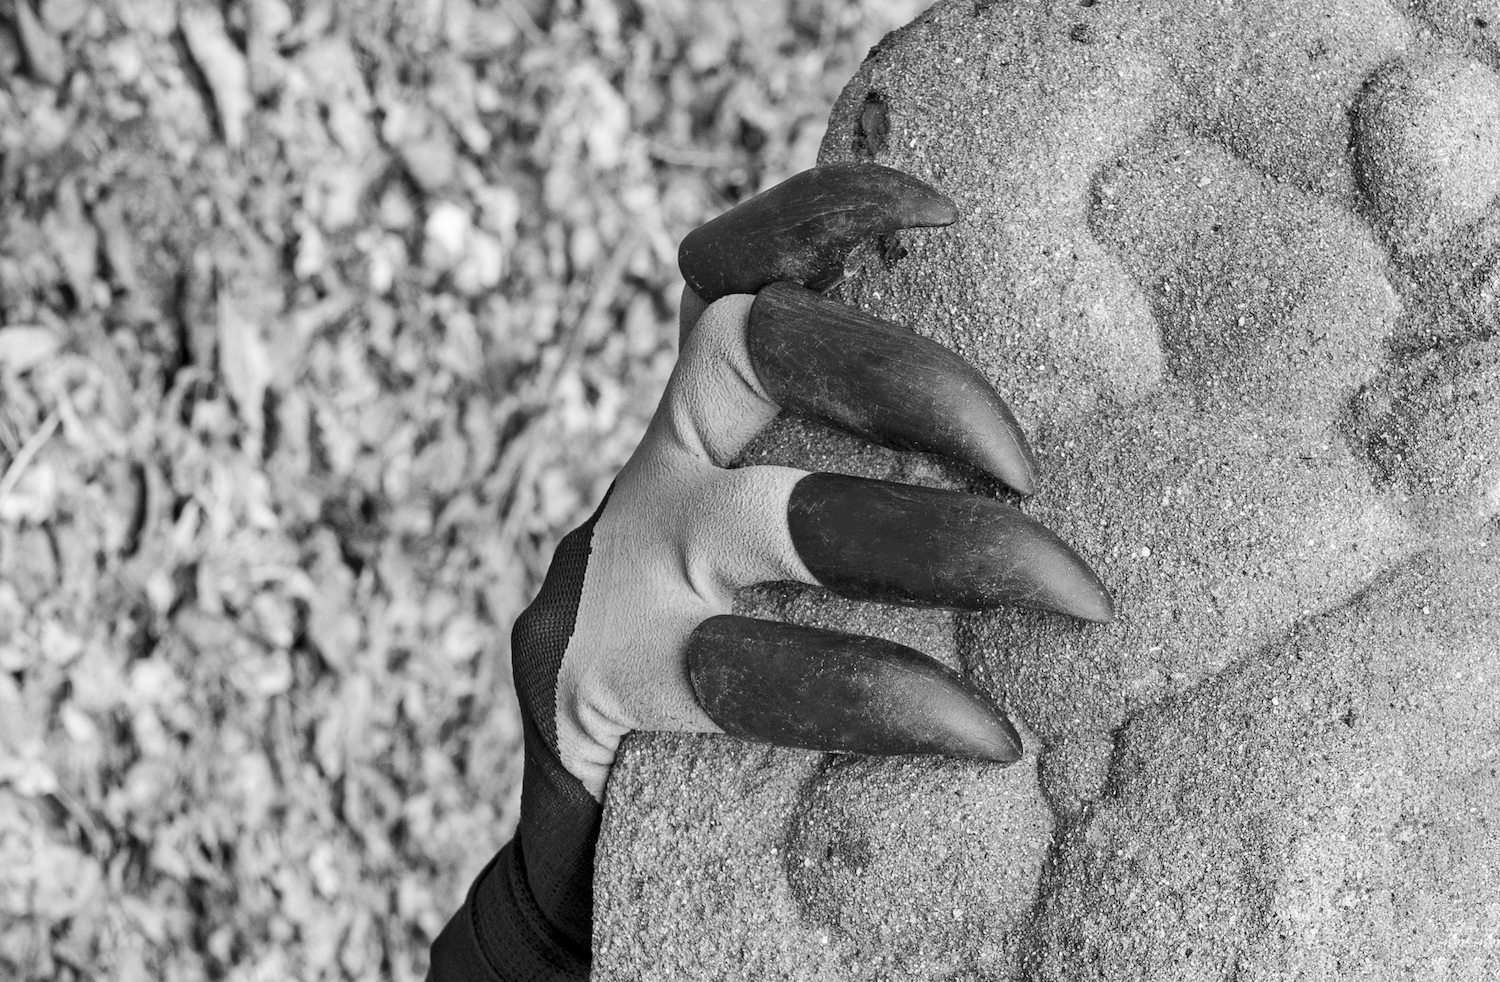 Eine Hand mit vorgelartigen Krallen greift an einen Stein. Foto in Schwarz-Weiß.